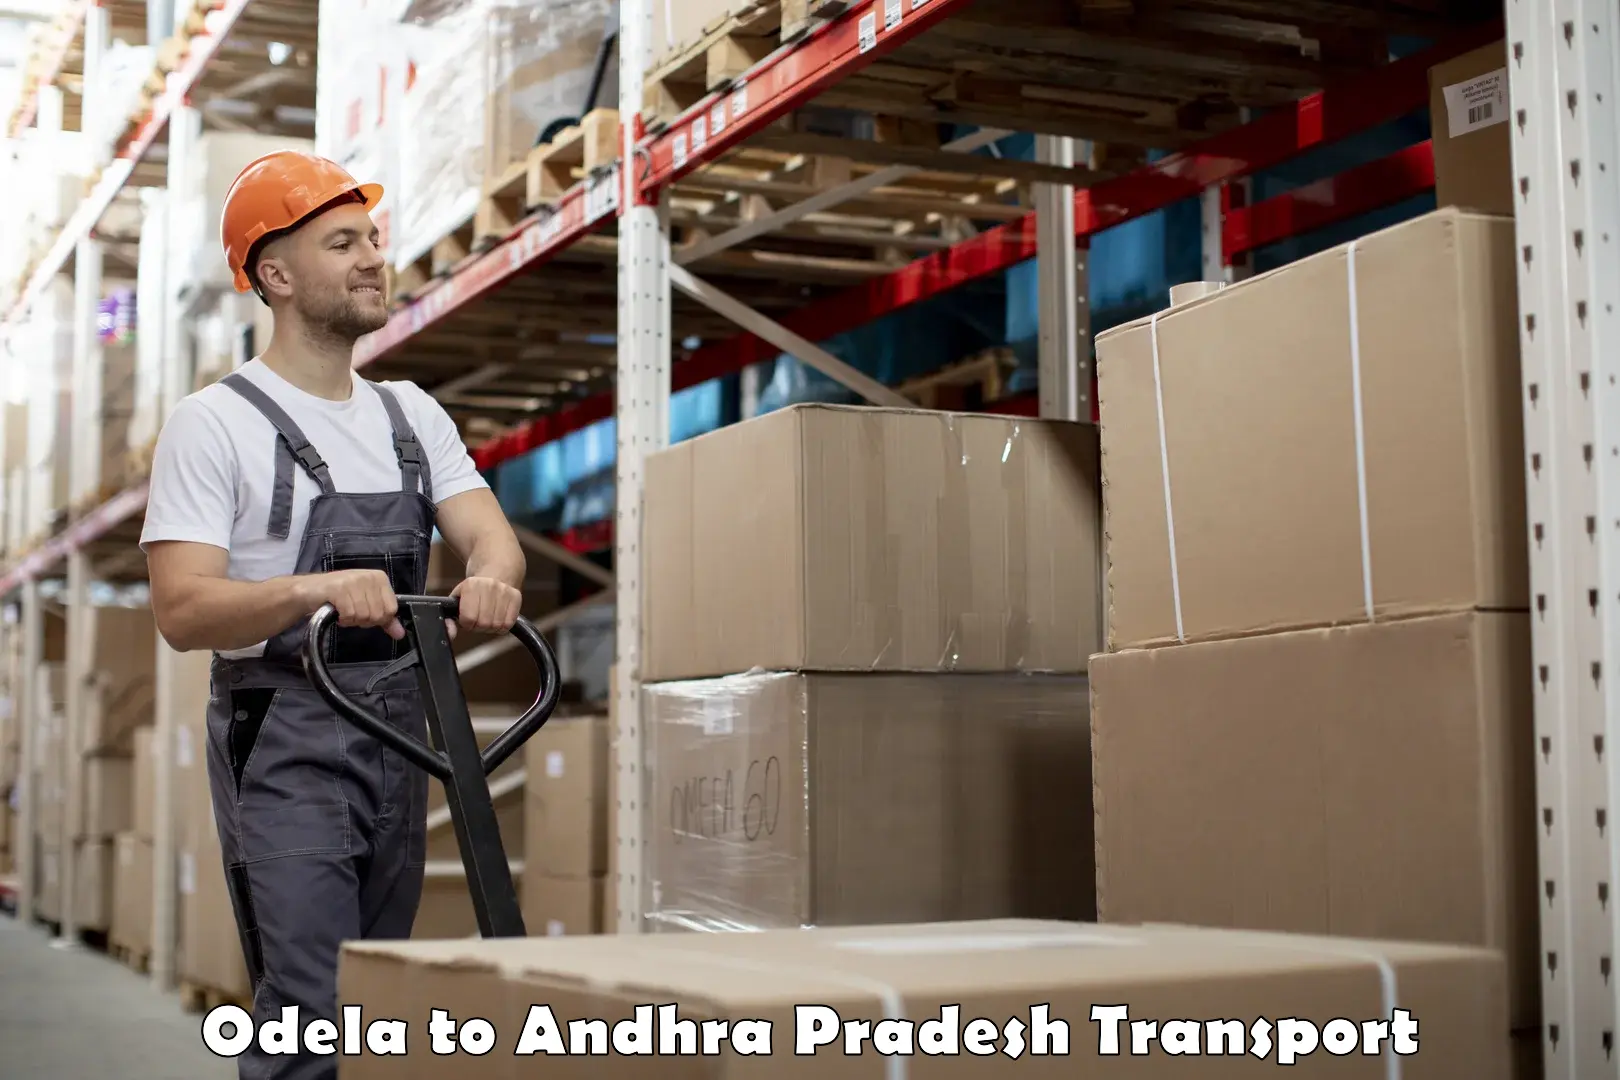 Logistics transportation services Odela to Tripuranthakam